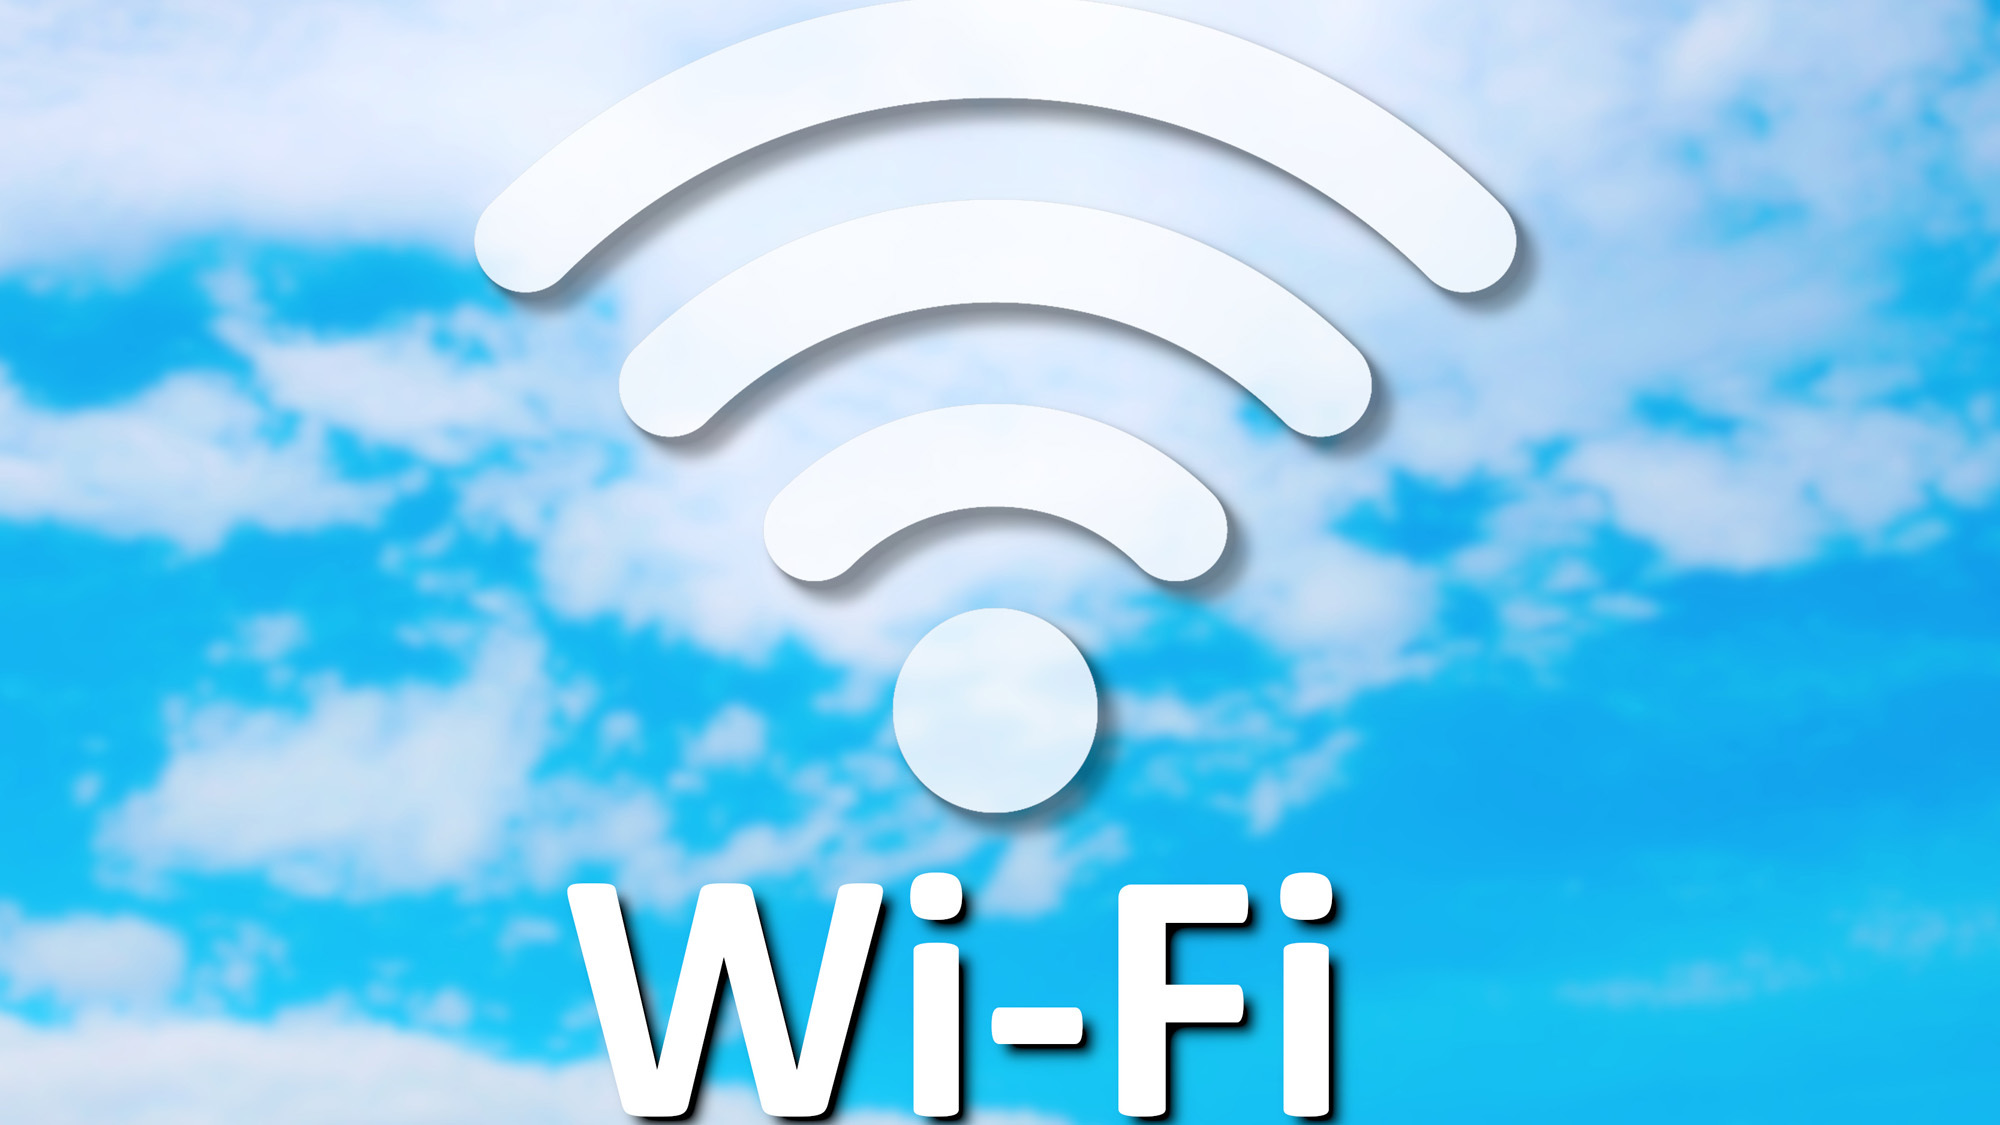 WIFI完備で、快適なインターネット環境です。